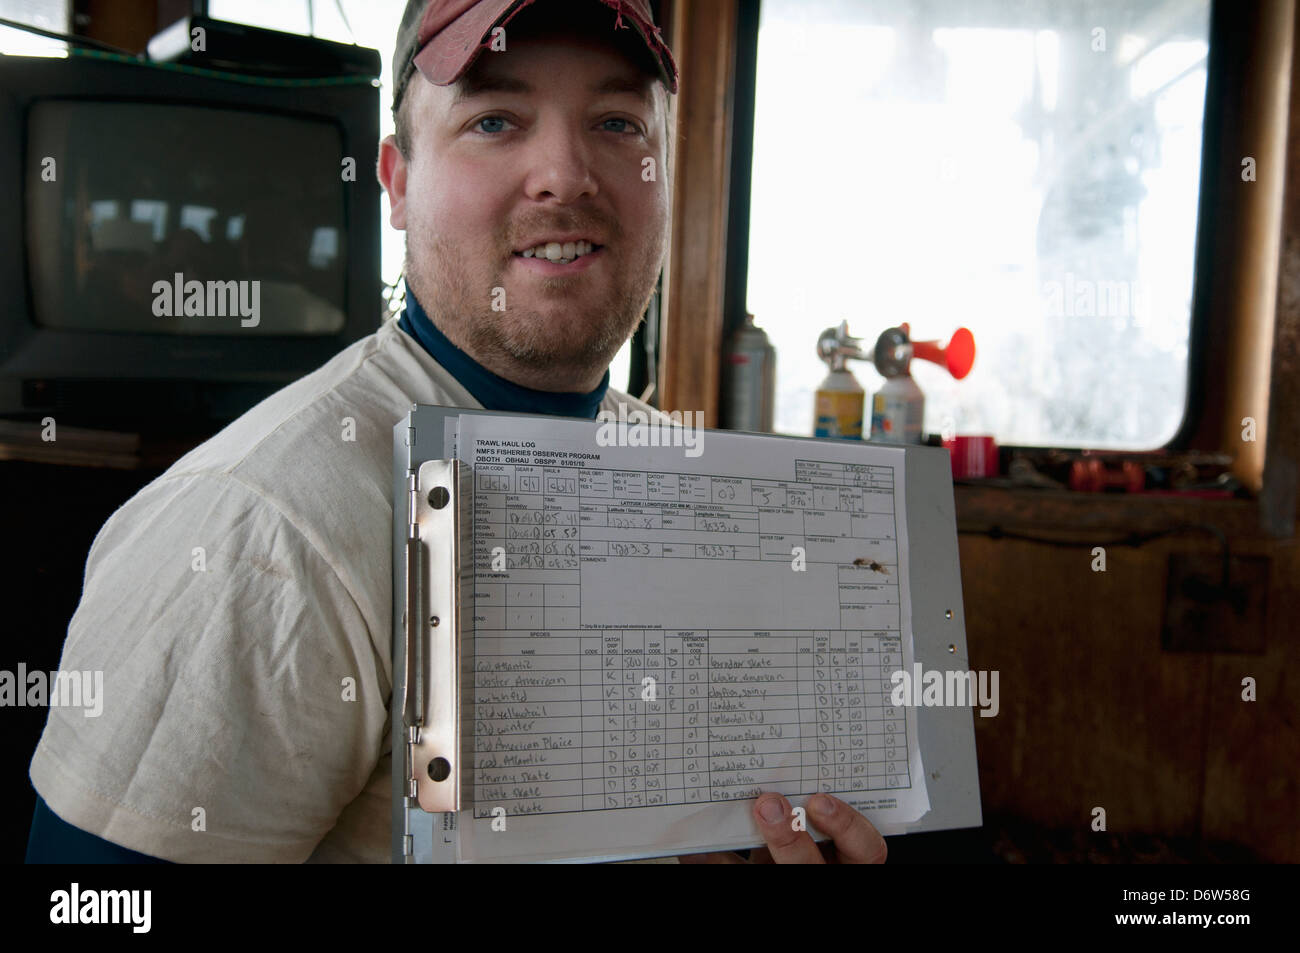 Fischerei Inspektor hält Diagramm mit Haken Details. Stellwagen Banken, New England, Vereinigte Staaten von Amerika, Nord-Atlantik Stockfoto